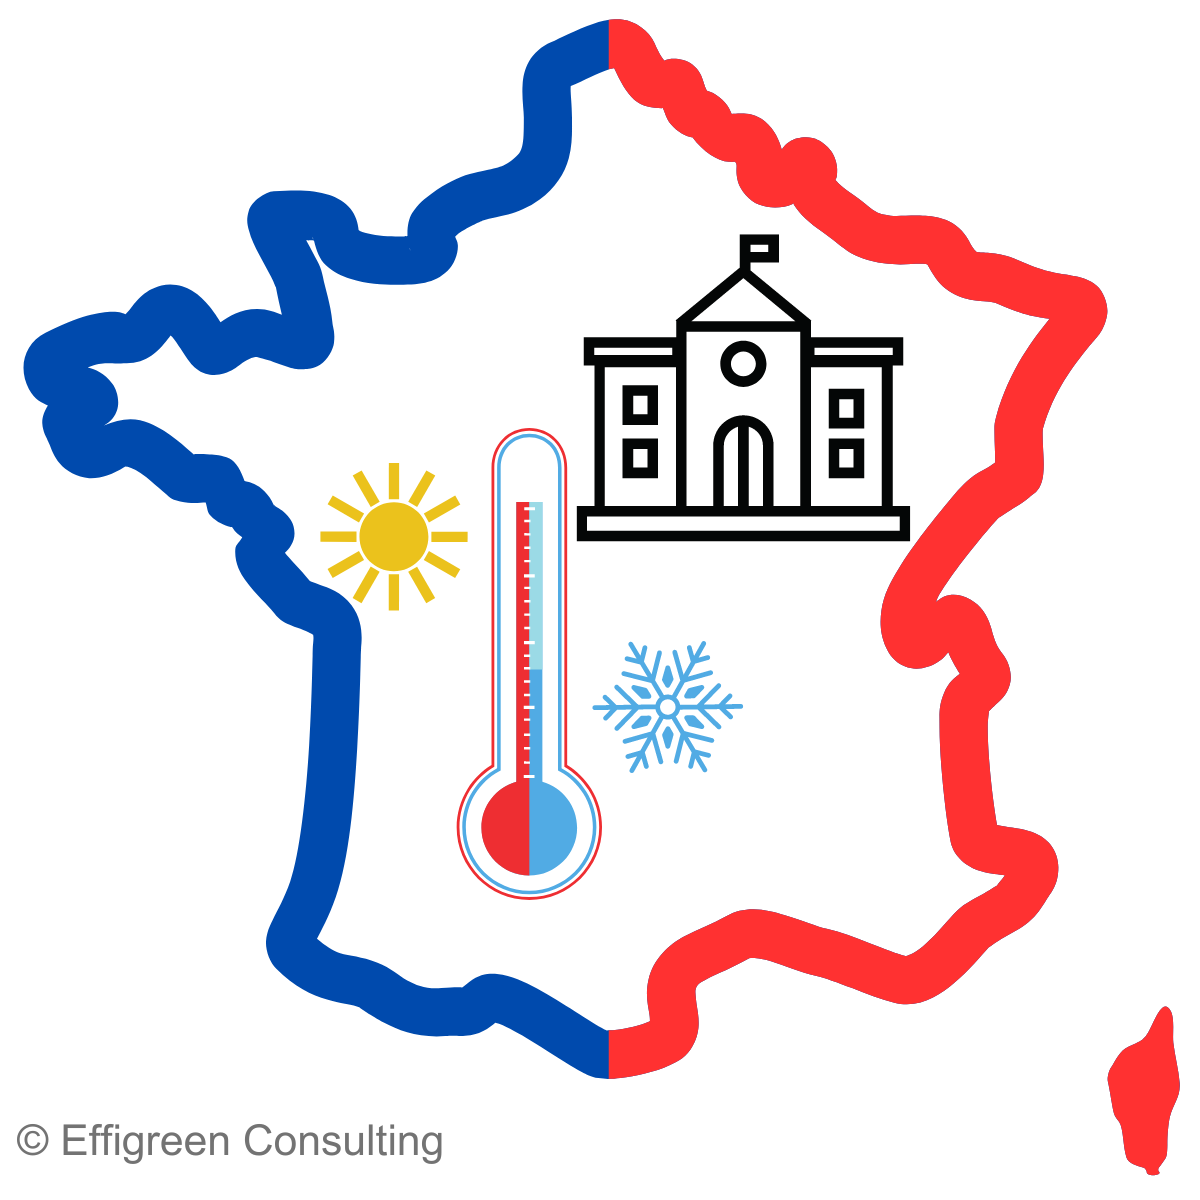 Elément graphique représentant la France avec, à l'intérieur, un thermomètre et un bâtiment public.